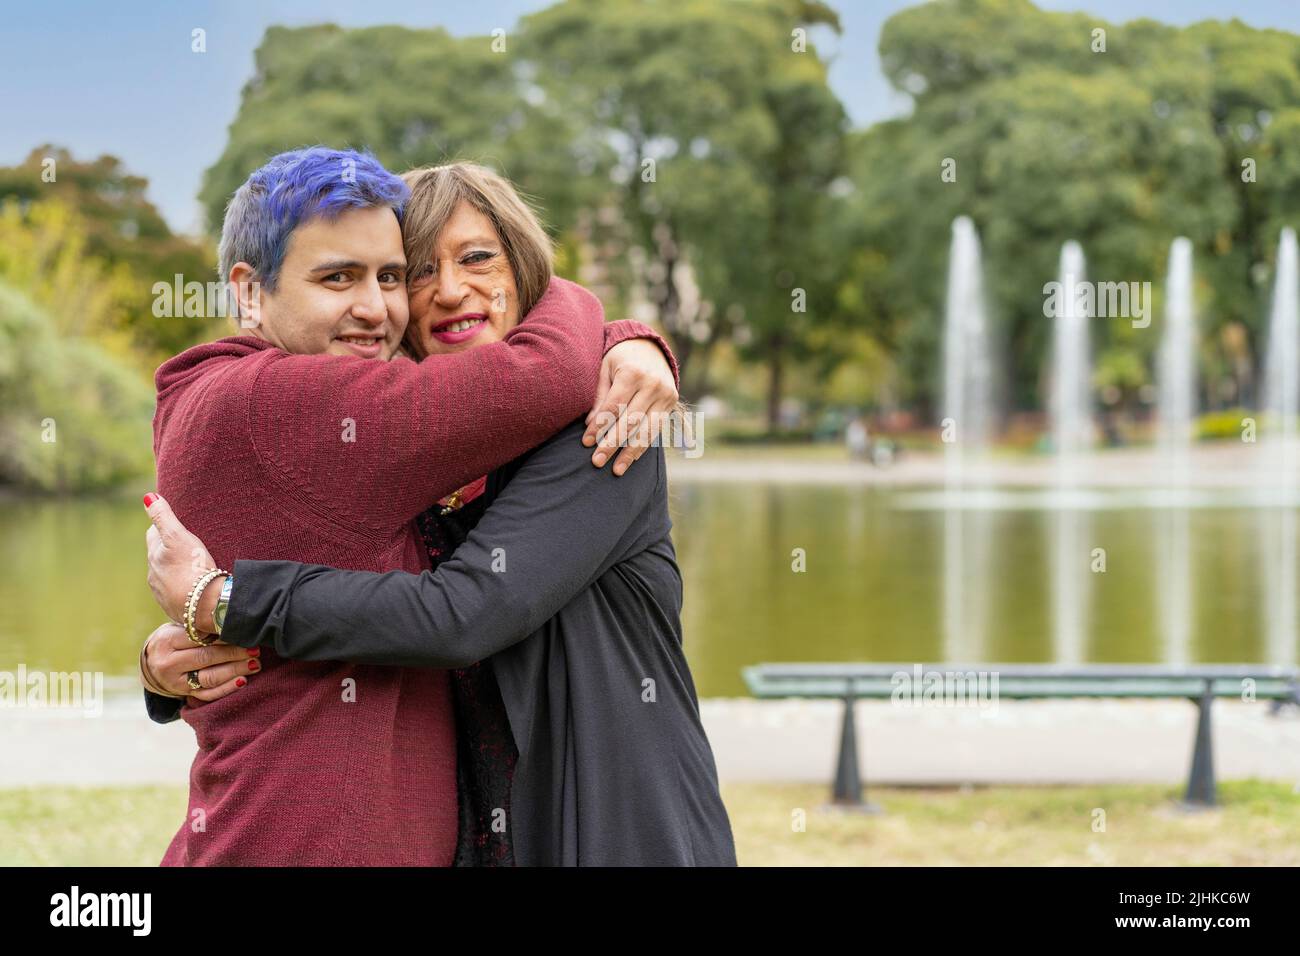 Alegre pareja queer abrazando en un parque mirando la cámara Foto de stock